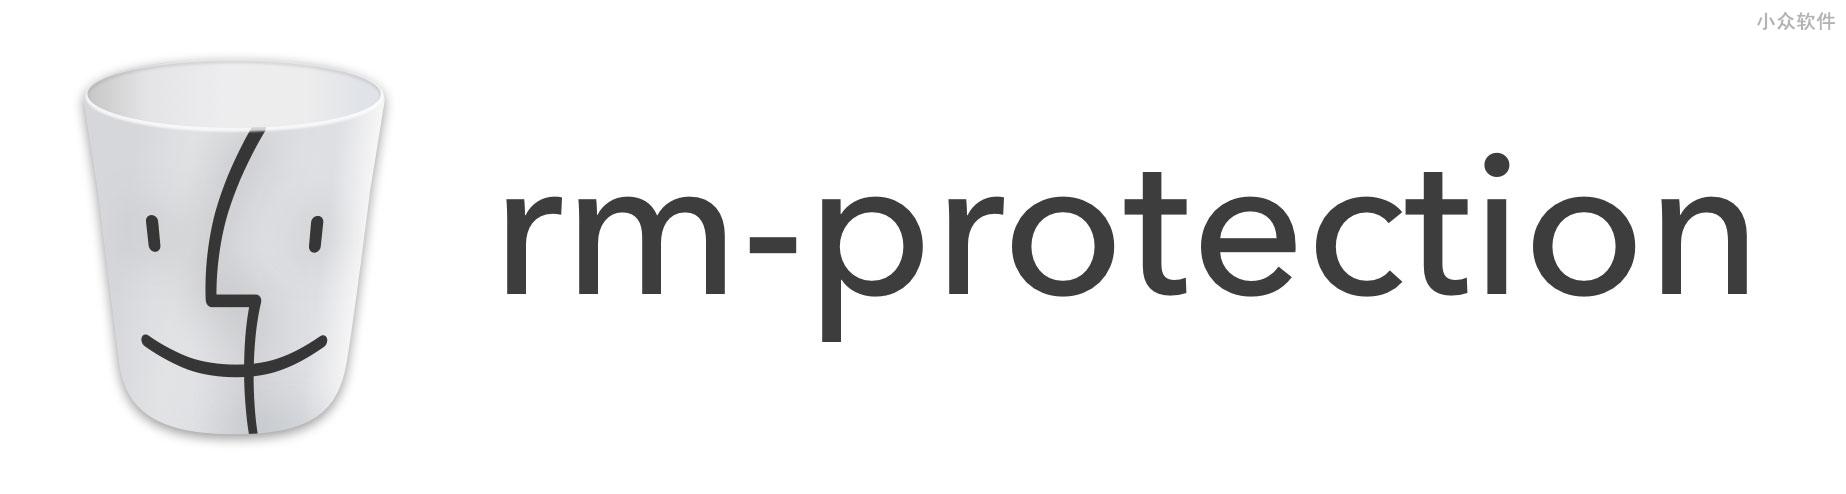 rm-protection - 防止误删除、预防 GitLab 事件再次发生 1